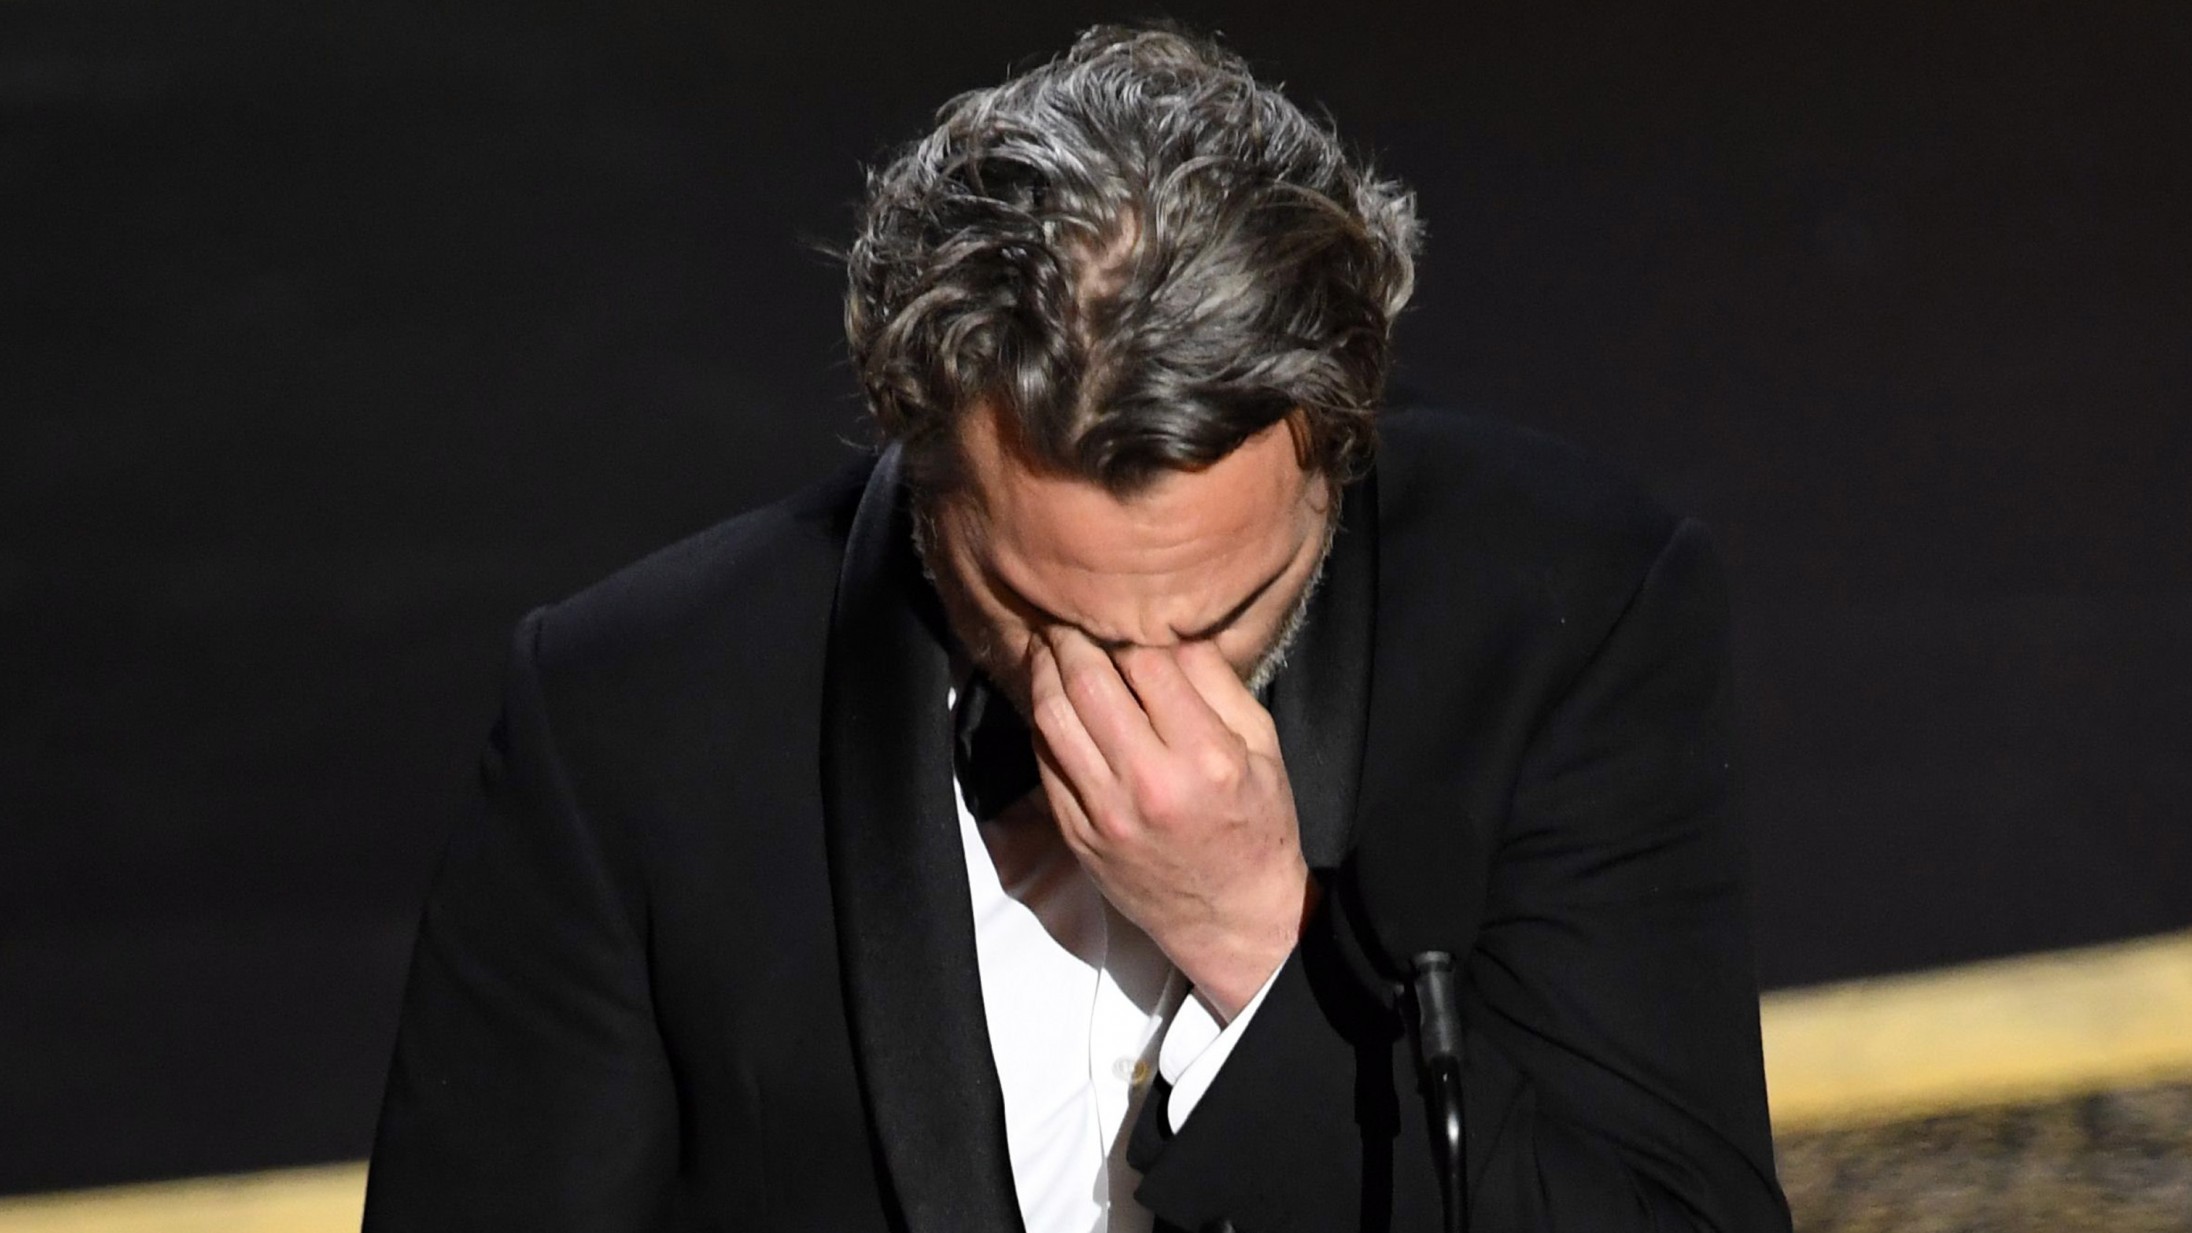 Joaquin Phoenix i Oscar-vindertale: »Jeg har været selvisk, ond og svær at arbejde med«